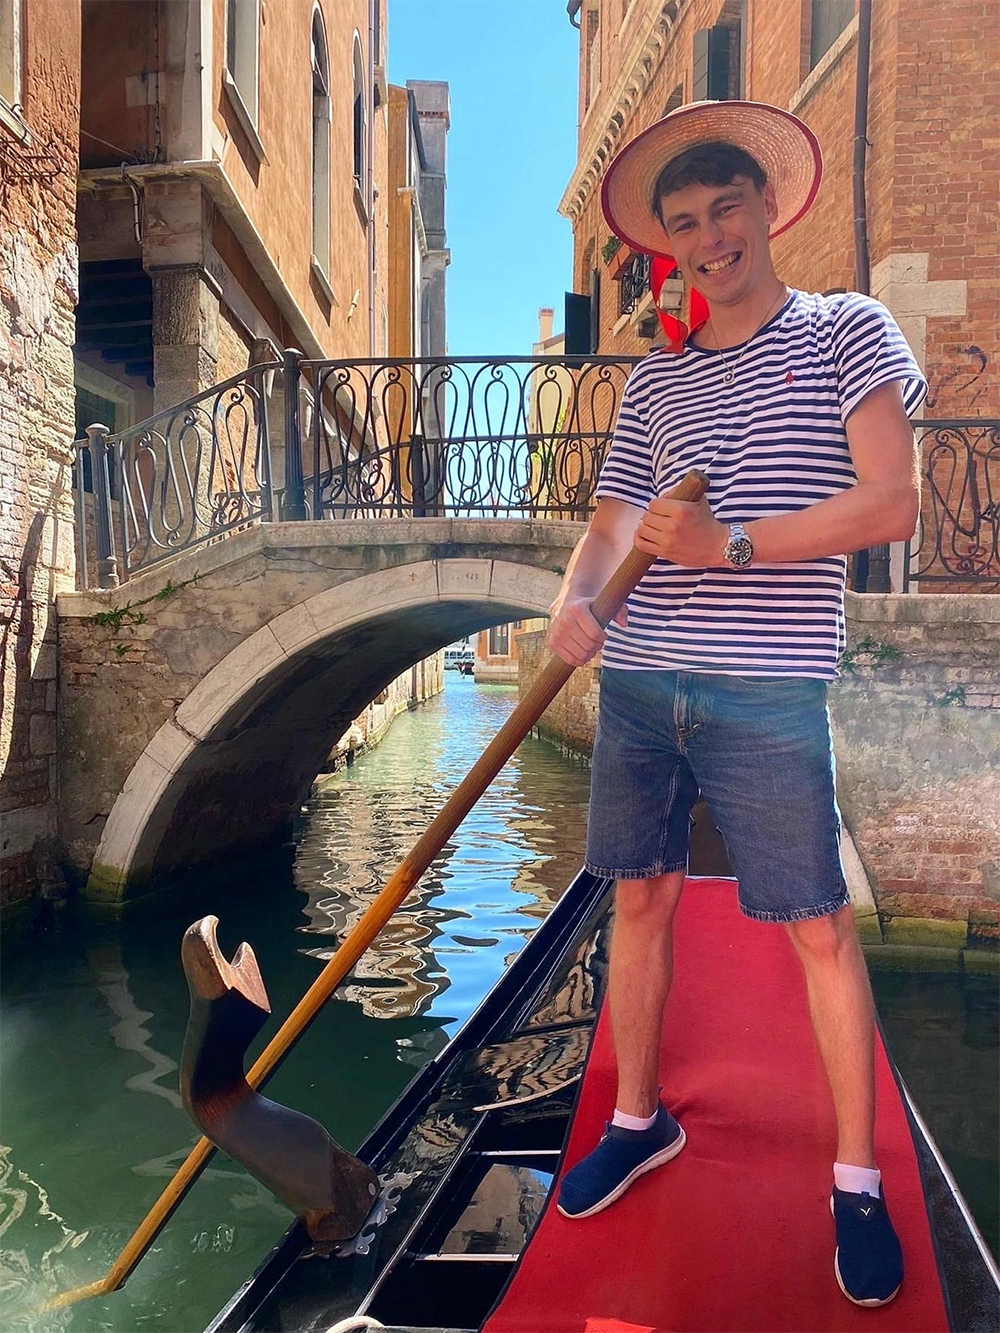 На фото управляю гондолой в Венеции. В этот день я случайно утопил все документы и ВНЖ в Гранд-канале